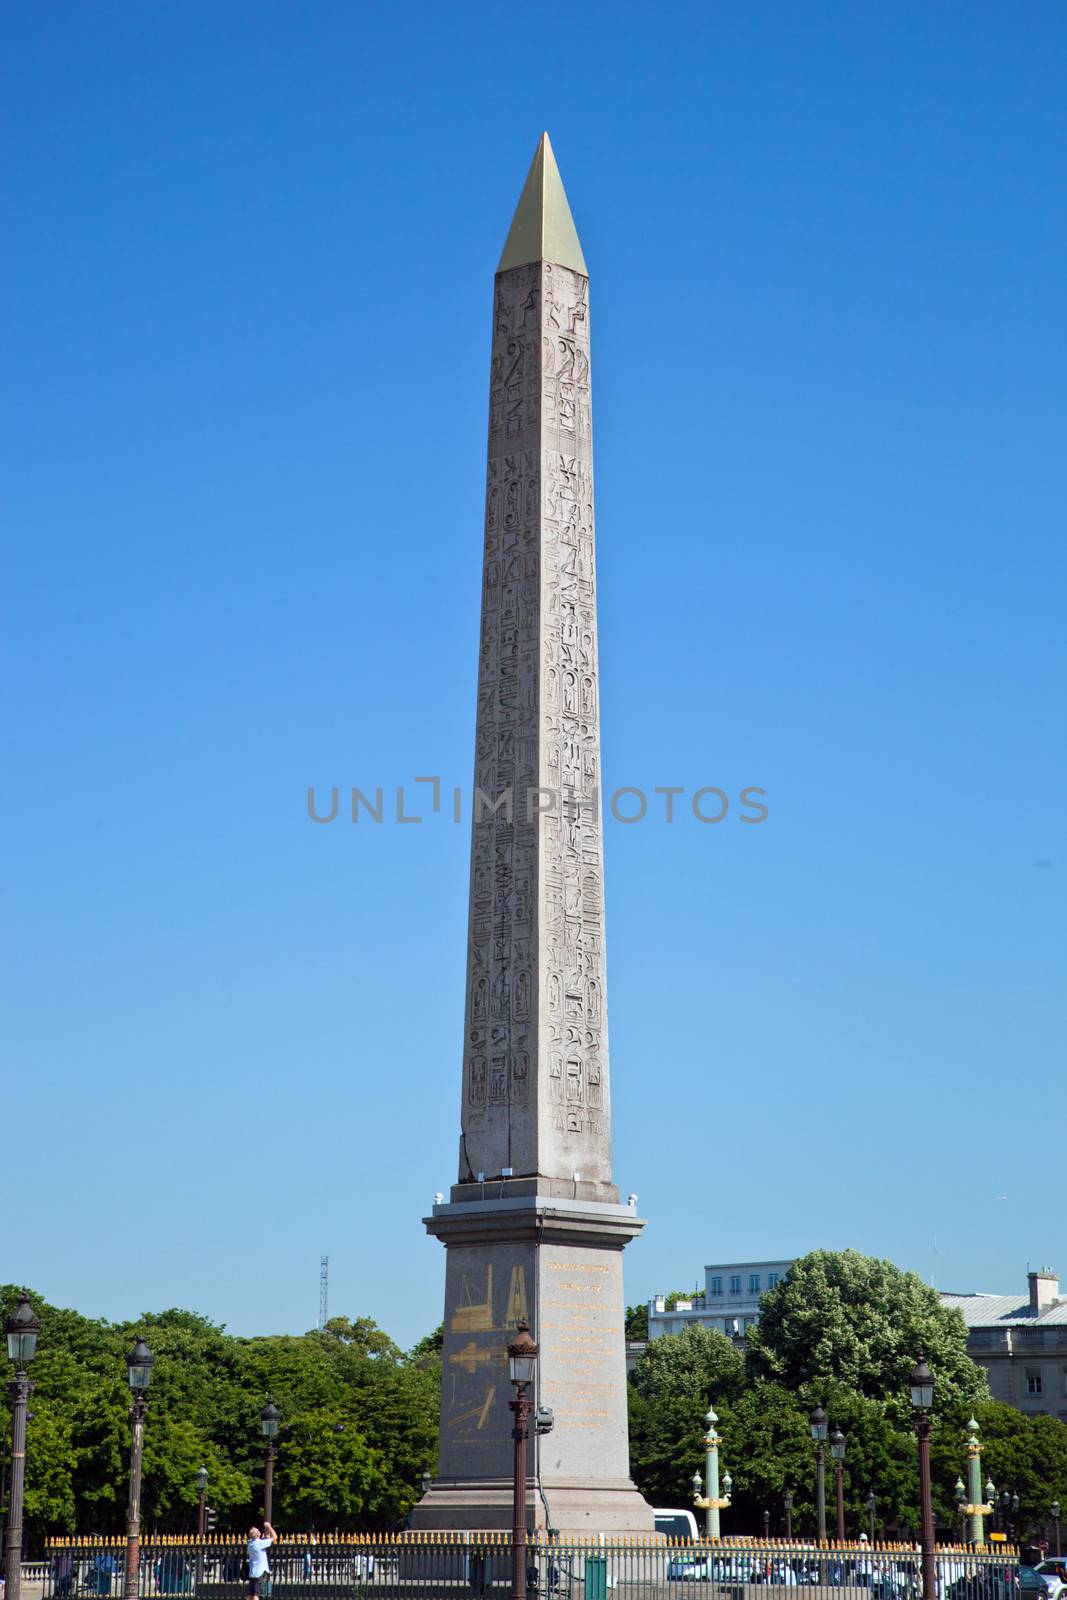 The Luxor Obelisk, French Obelisque de Louxor at the Place de la Concorde in Paris, France